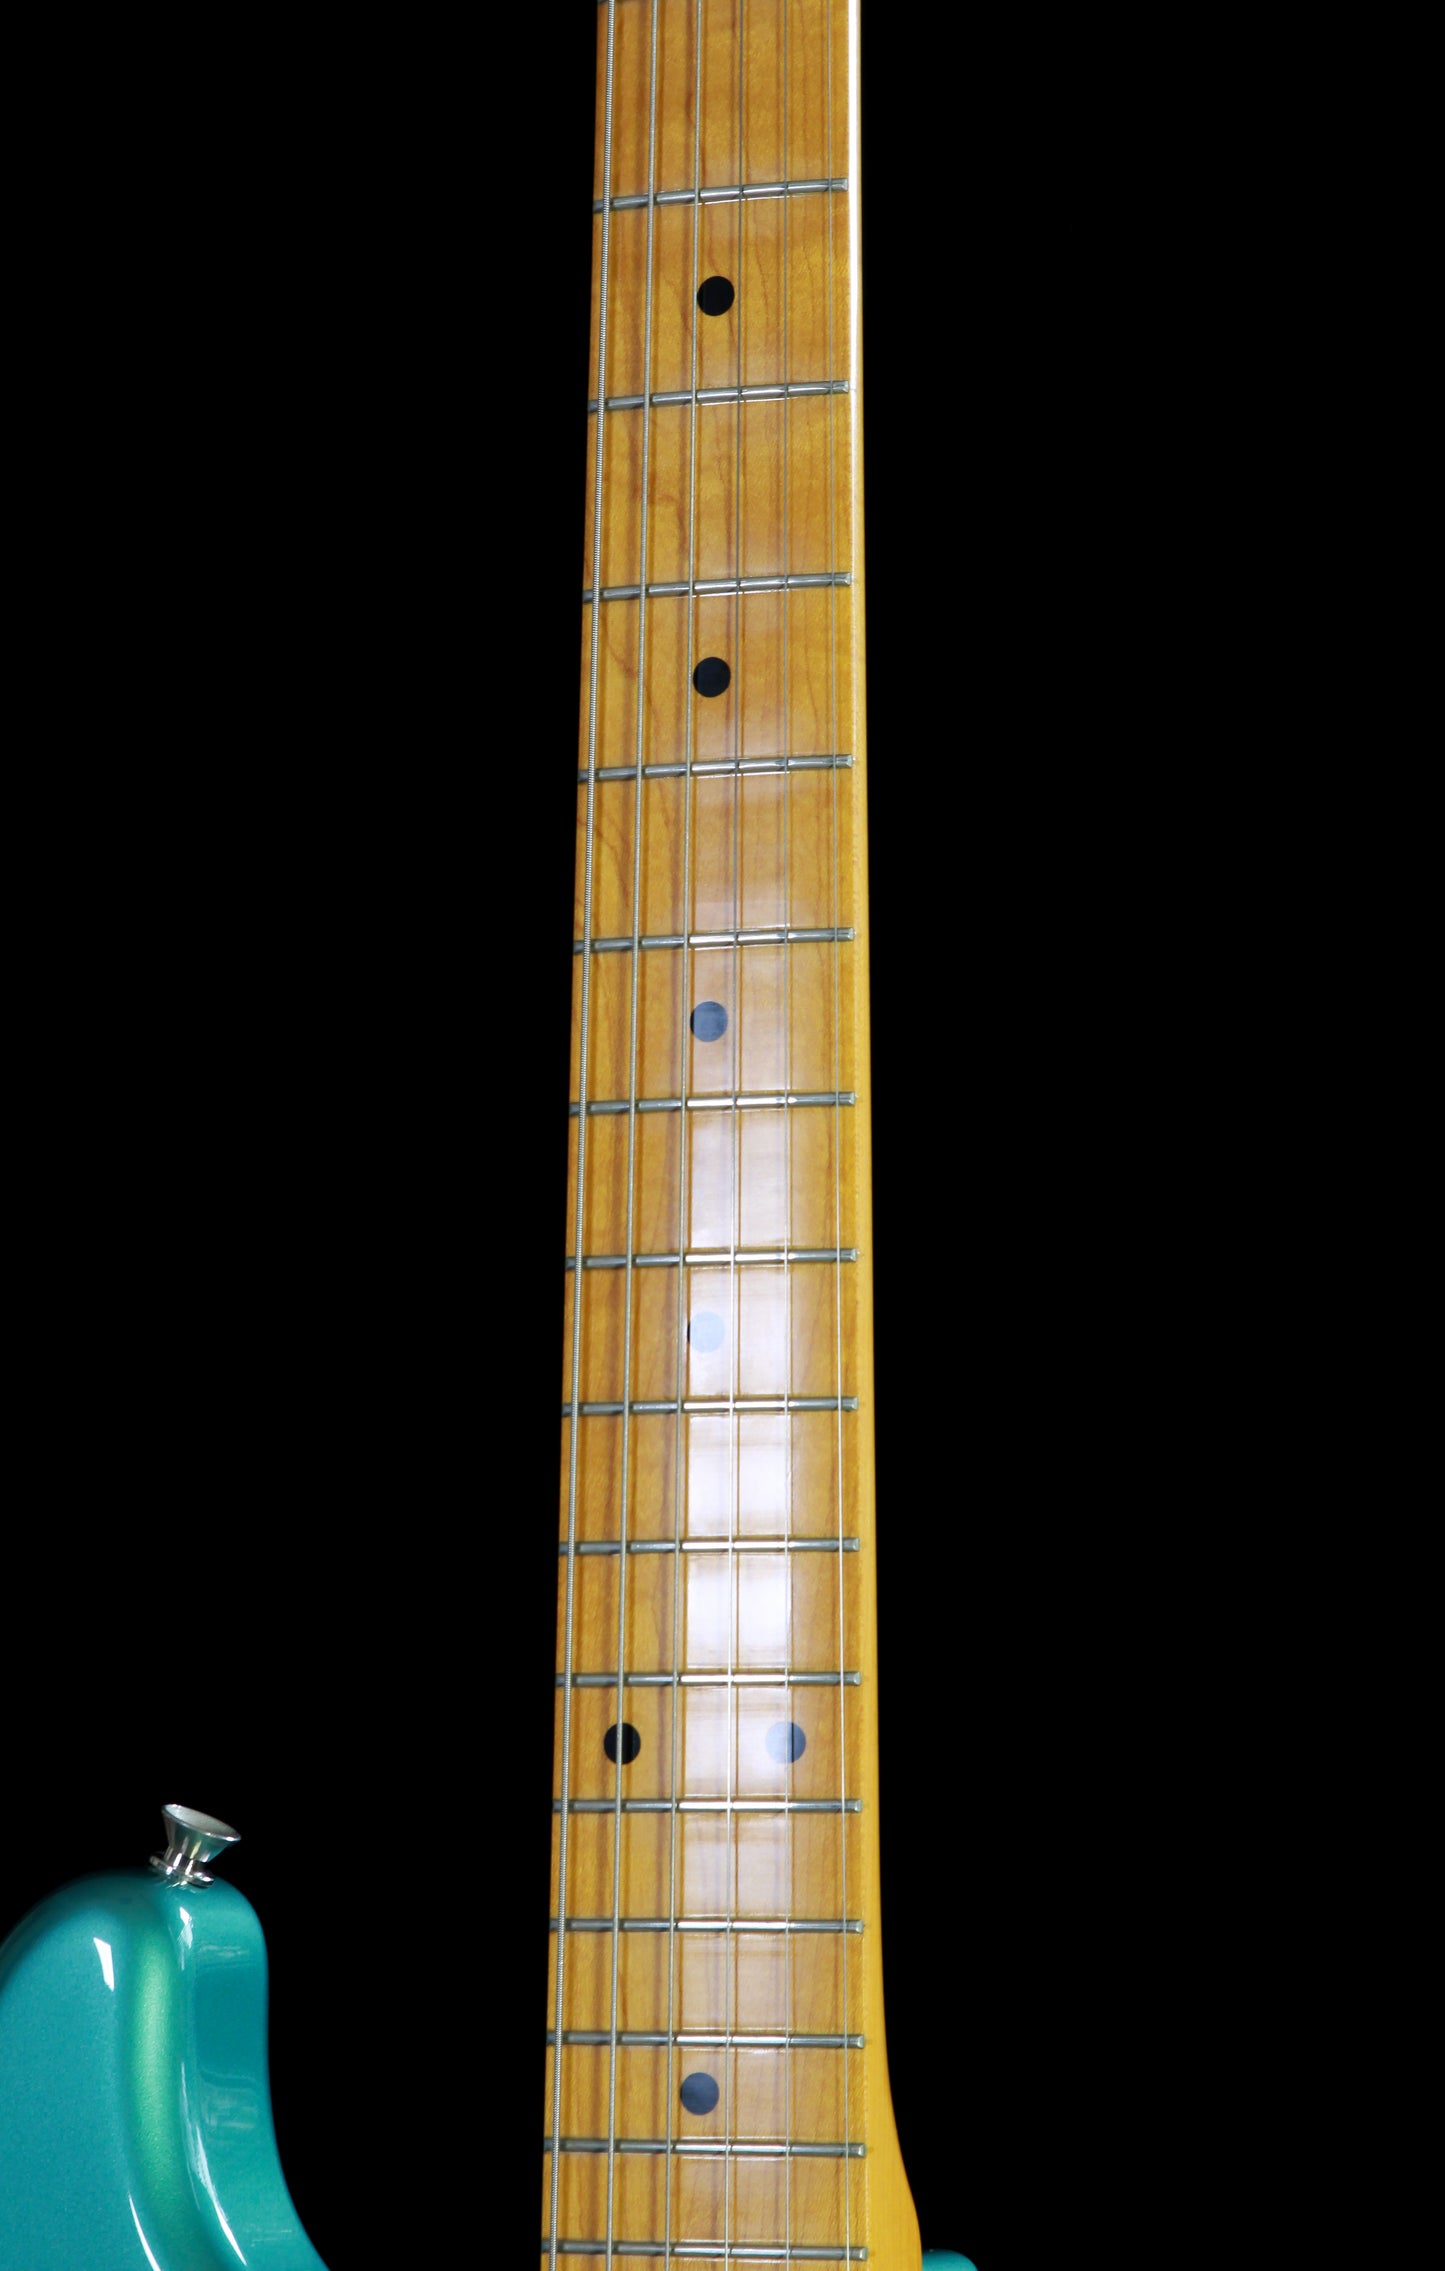 Fender Japan Stratocaster ST-57 Ocean Turquoise